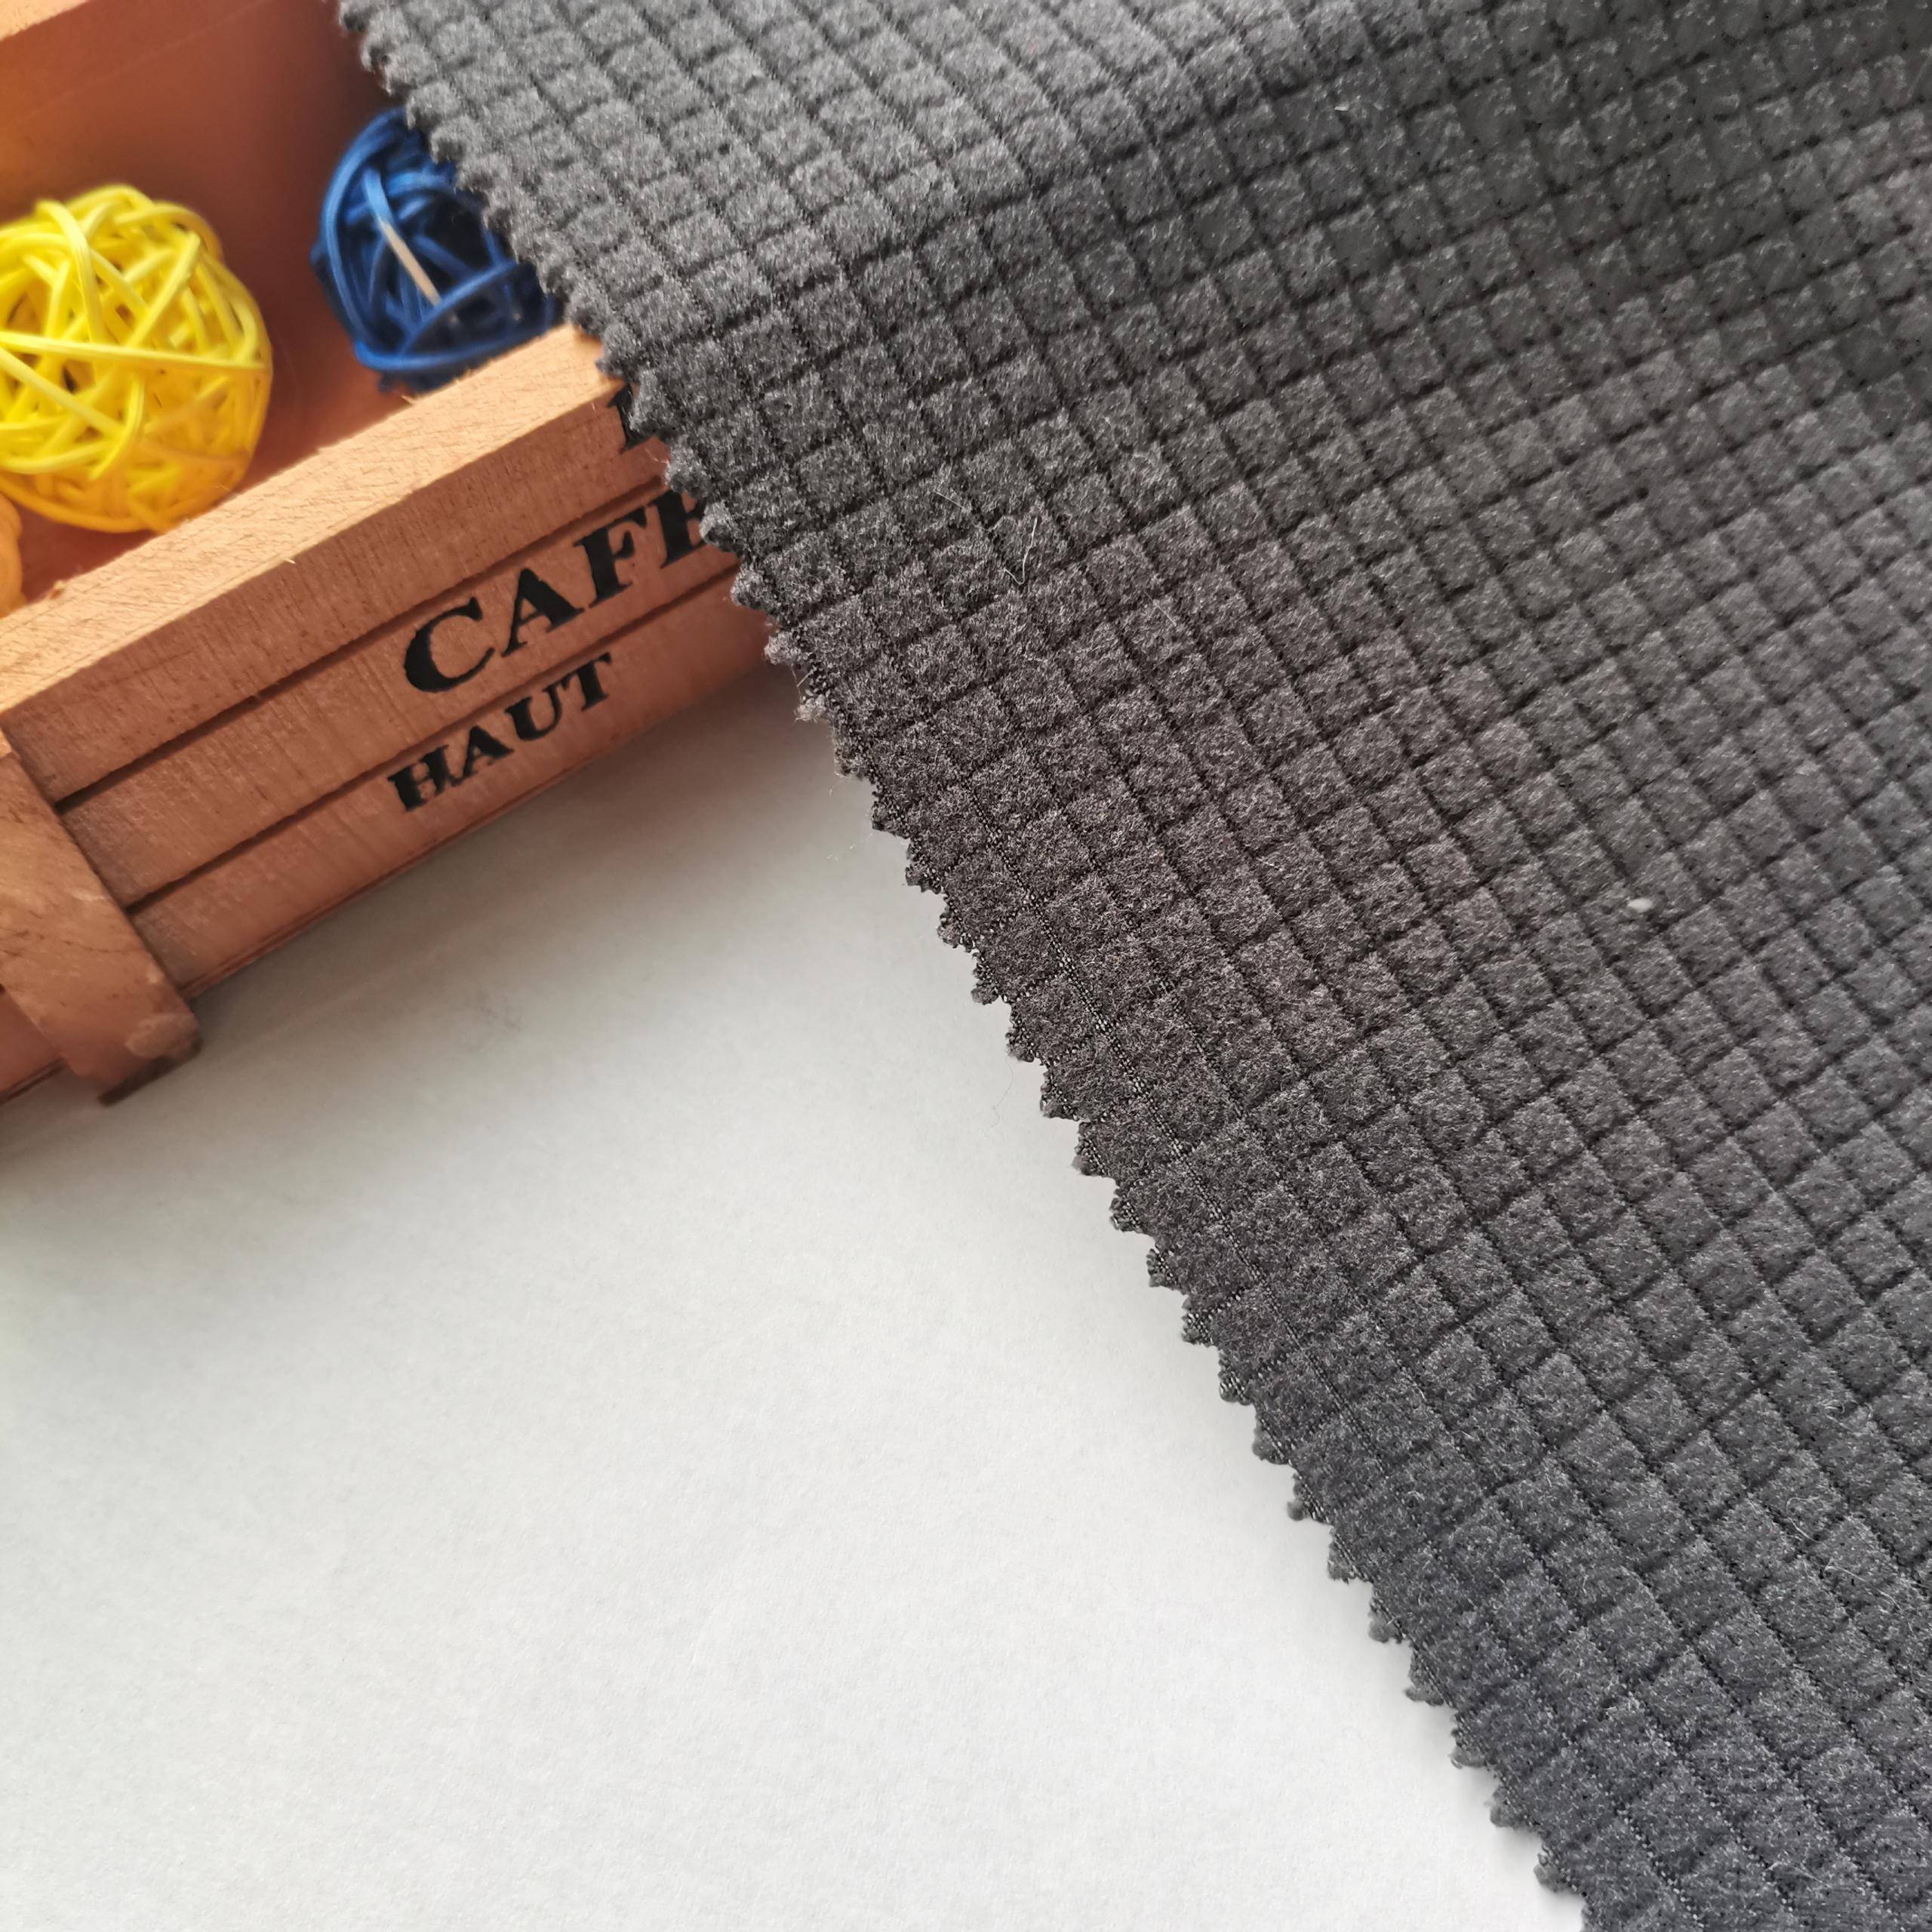 sikat nga disenyo nga fancy mini grid micro polyester jacquard knitting polar fleece fabric